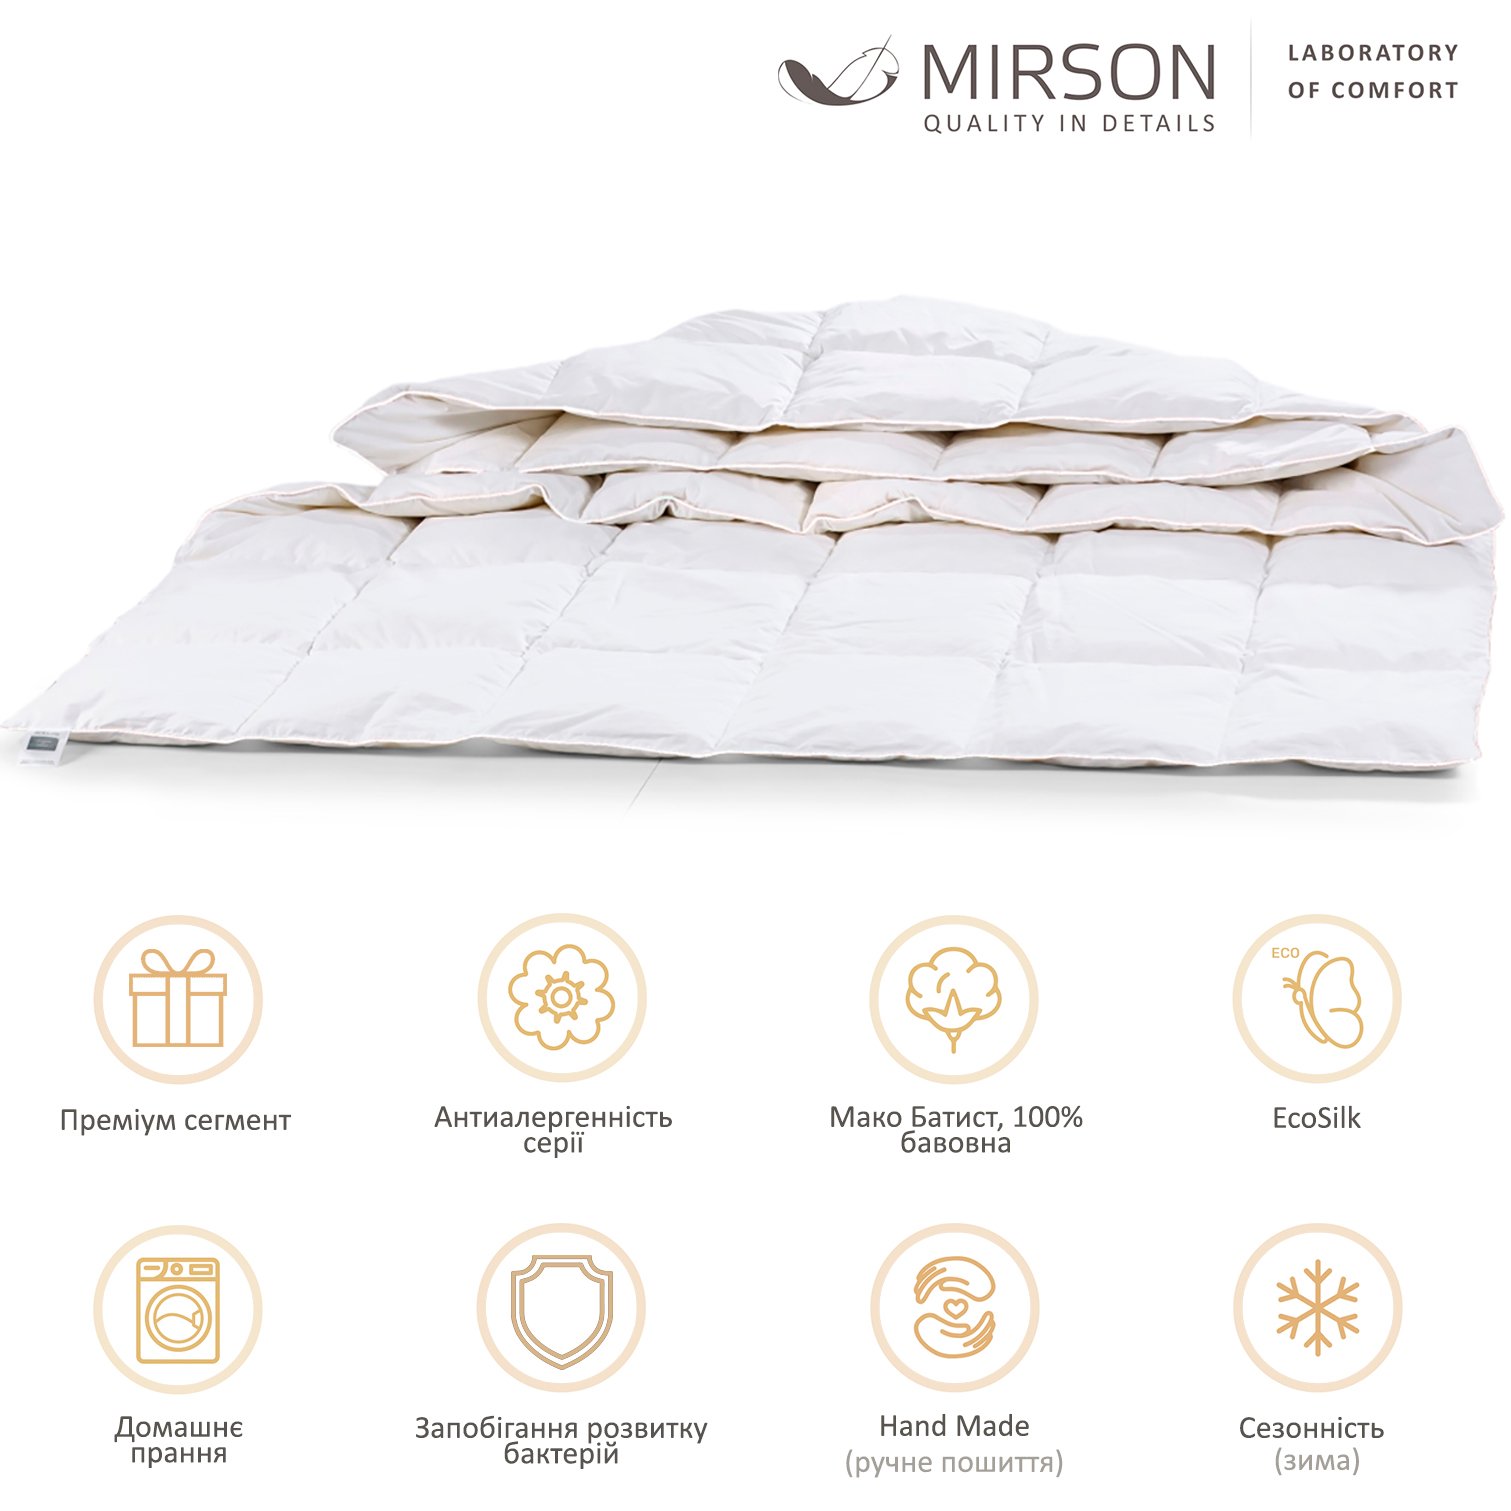 Одеяло антиаллергенное MirSon Luxury Exclusive EcoSilk №1317, зимнее, 200x220 см, белое (237054457) - фото 5